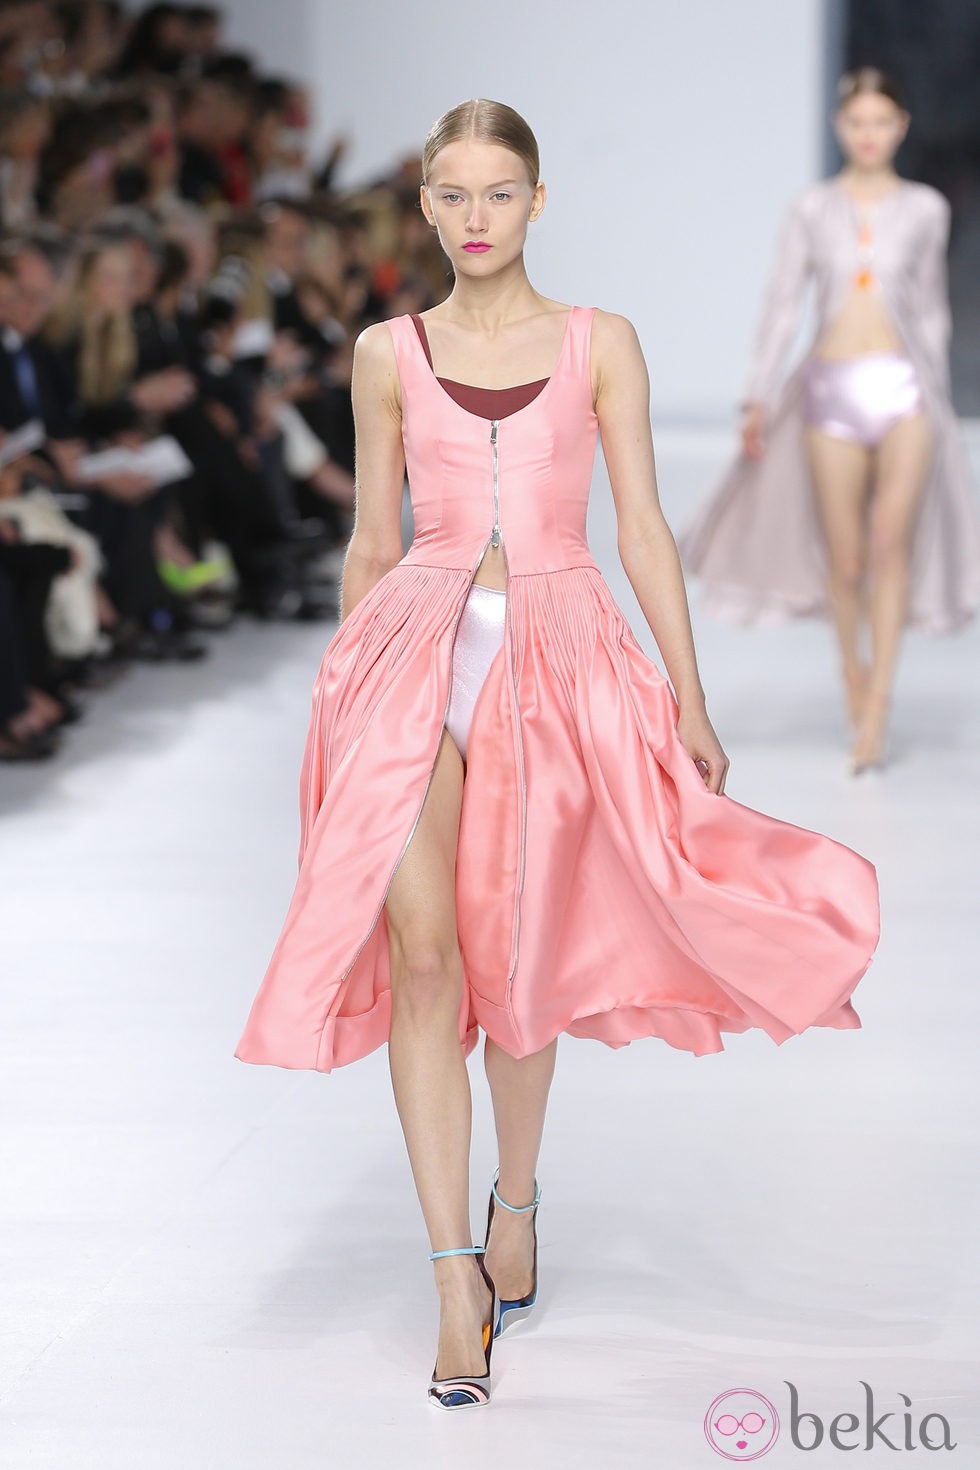 Vestido rosa de la colección crucero 2014 de Dior